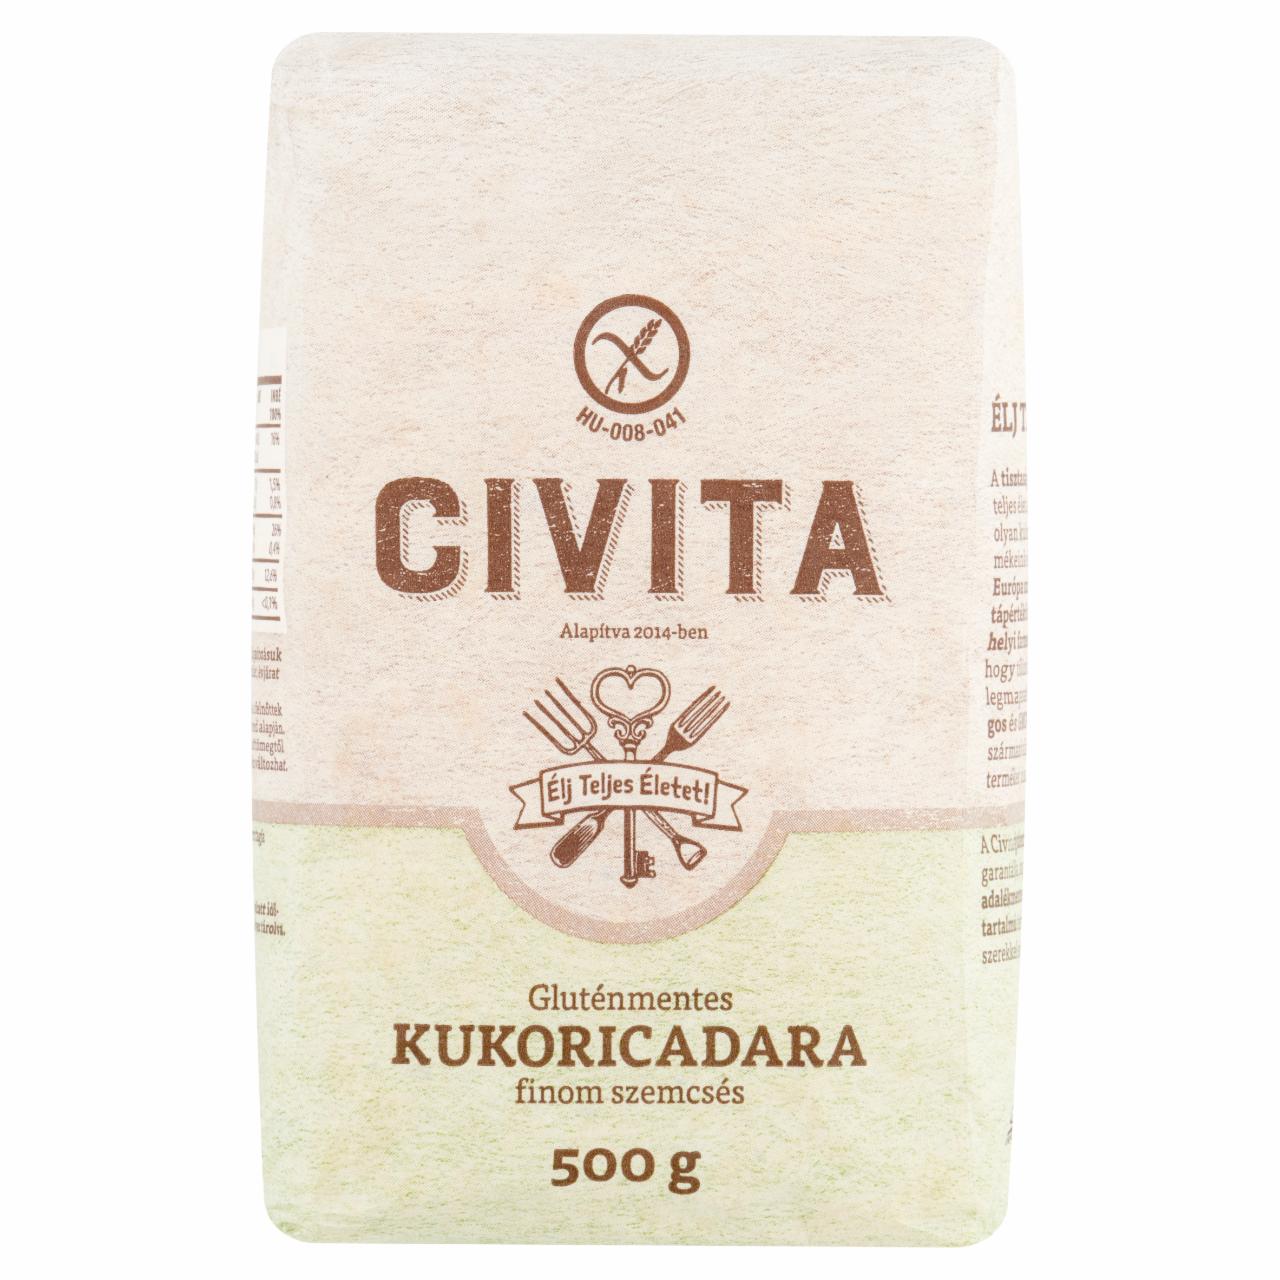 Képek - Civita gluténmentes finom szemcsés kukoricadara 500 g